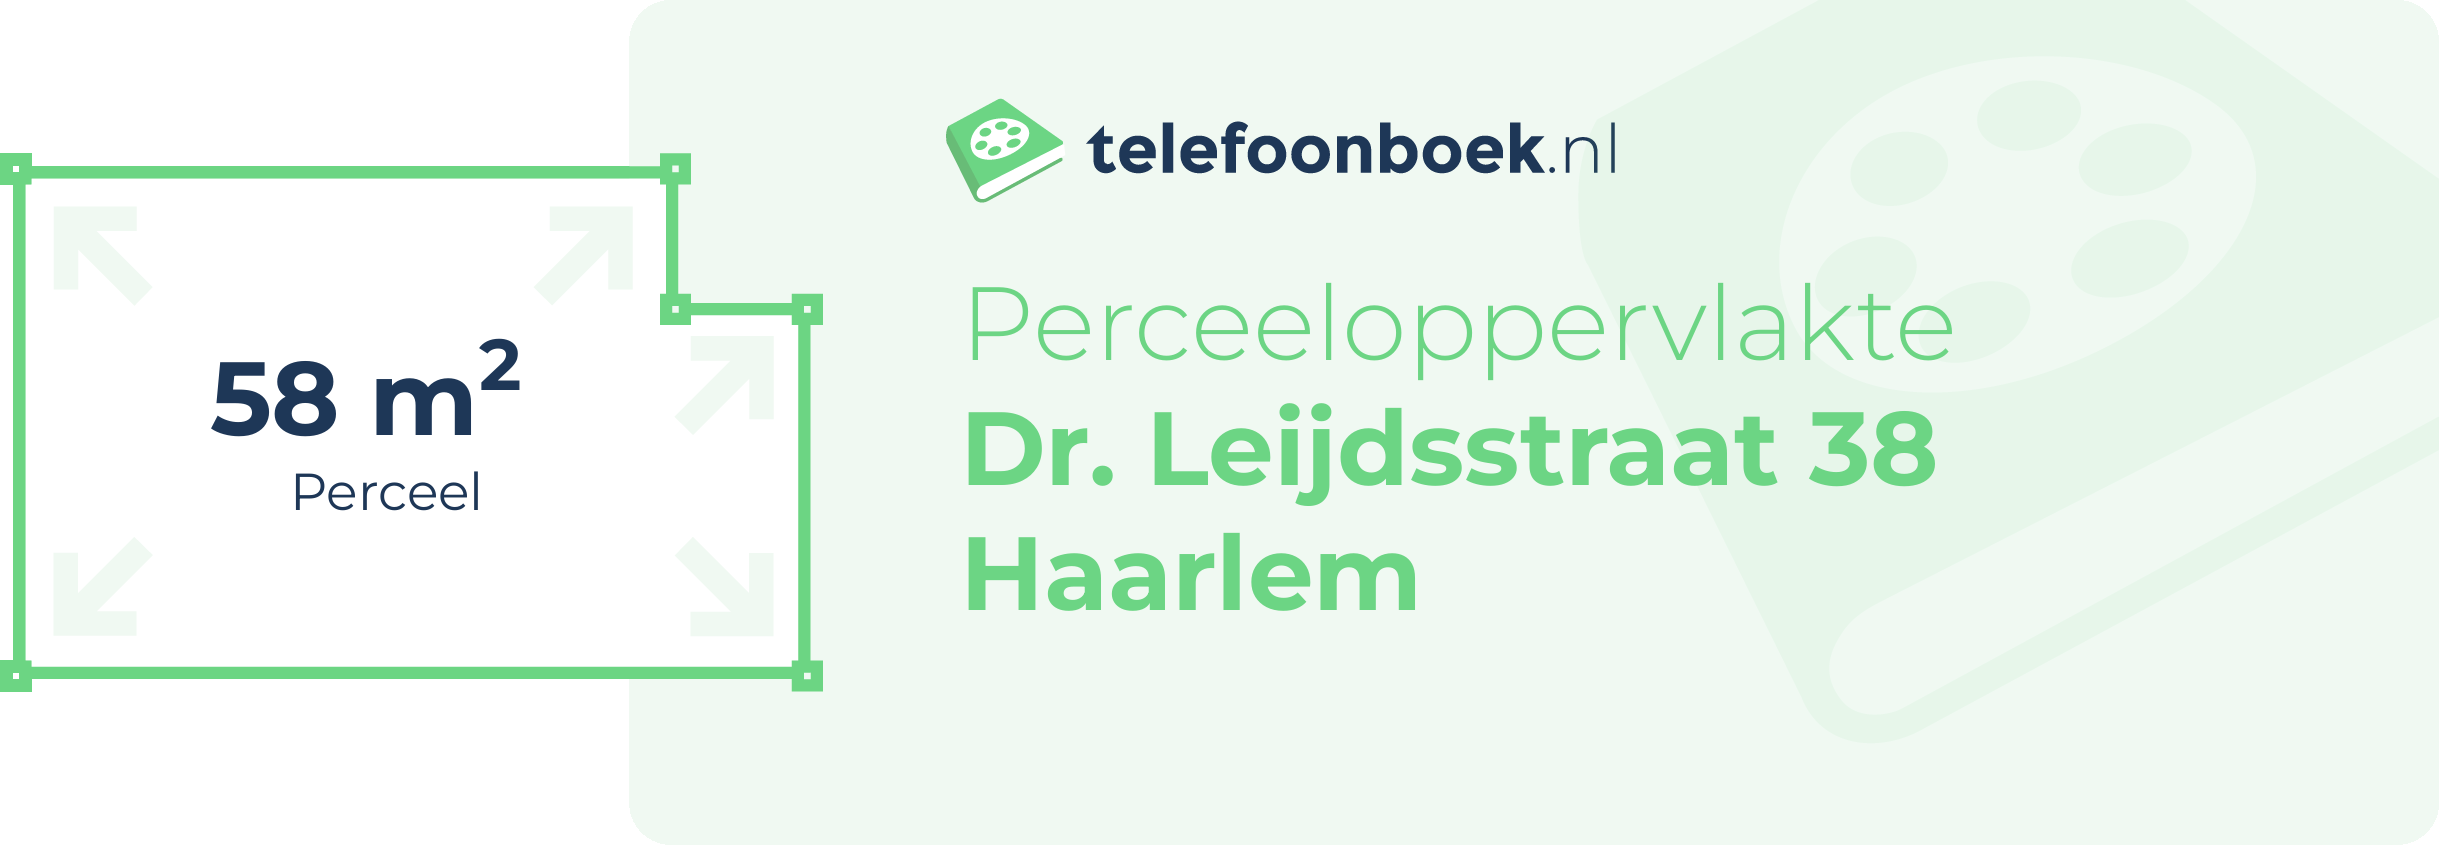 Perceeloppervlakte Dr. Leijdsstraat 38 Haarlem